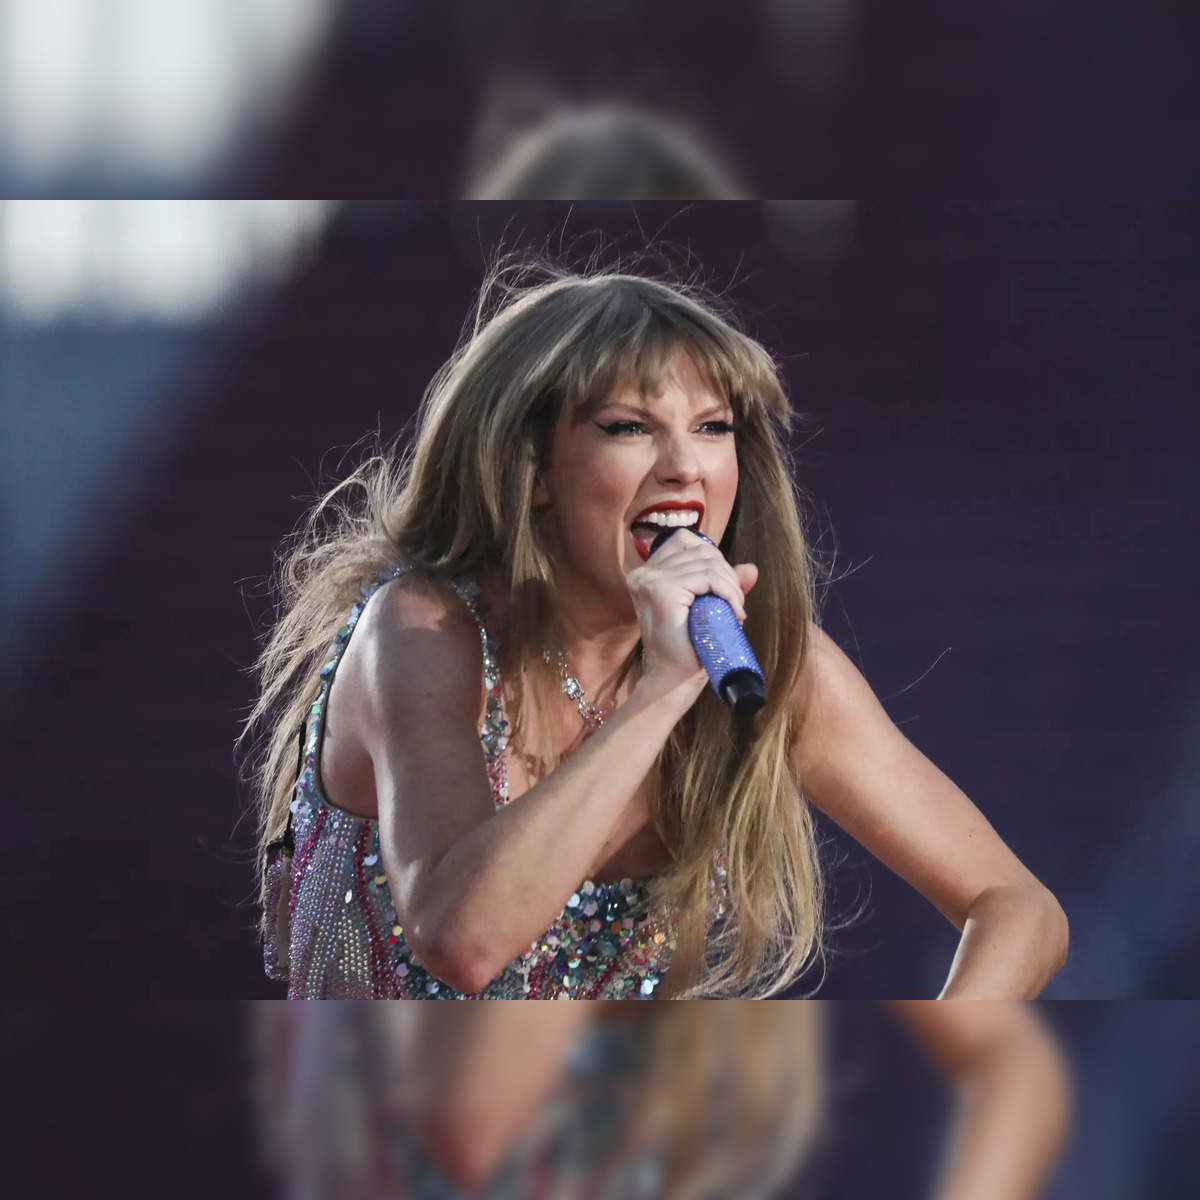 Taylor Swift's Eras Tour Surprise Songs: The List So Far